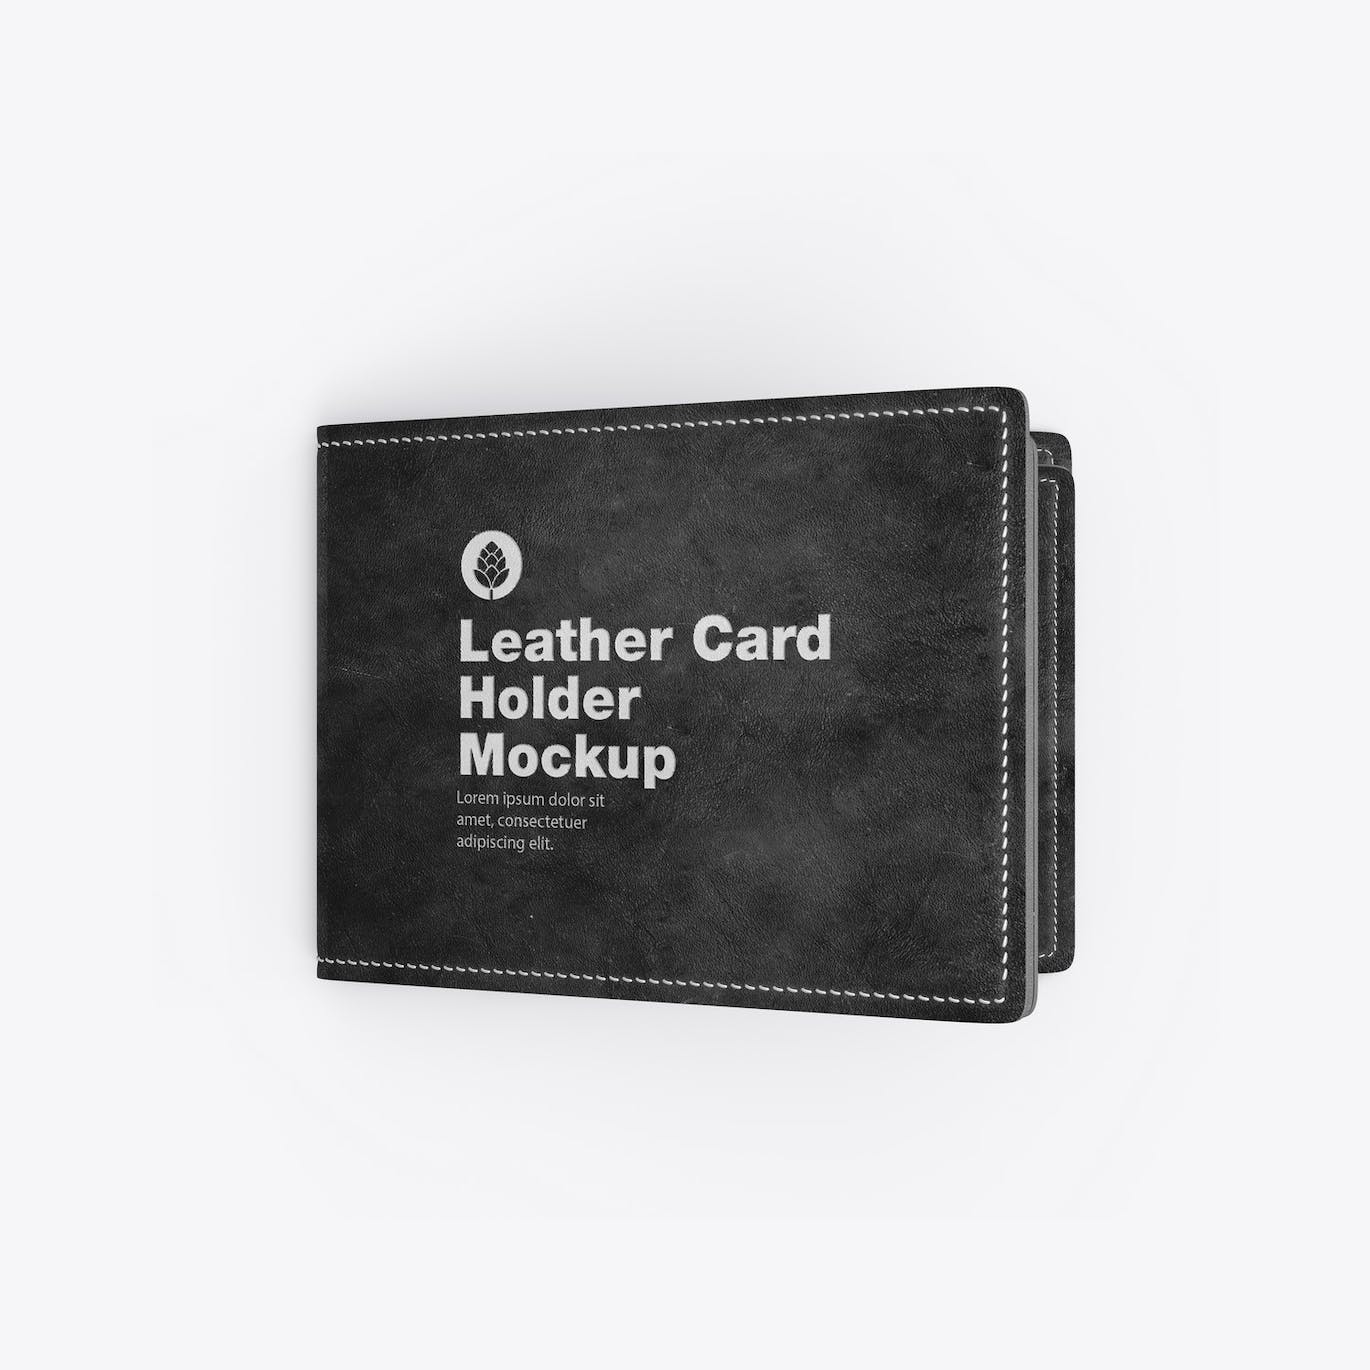 皮革卡片钱包夹设计样机模板 Leather Card Holder Mockup 样机素材 第9张